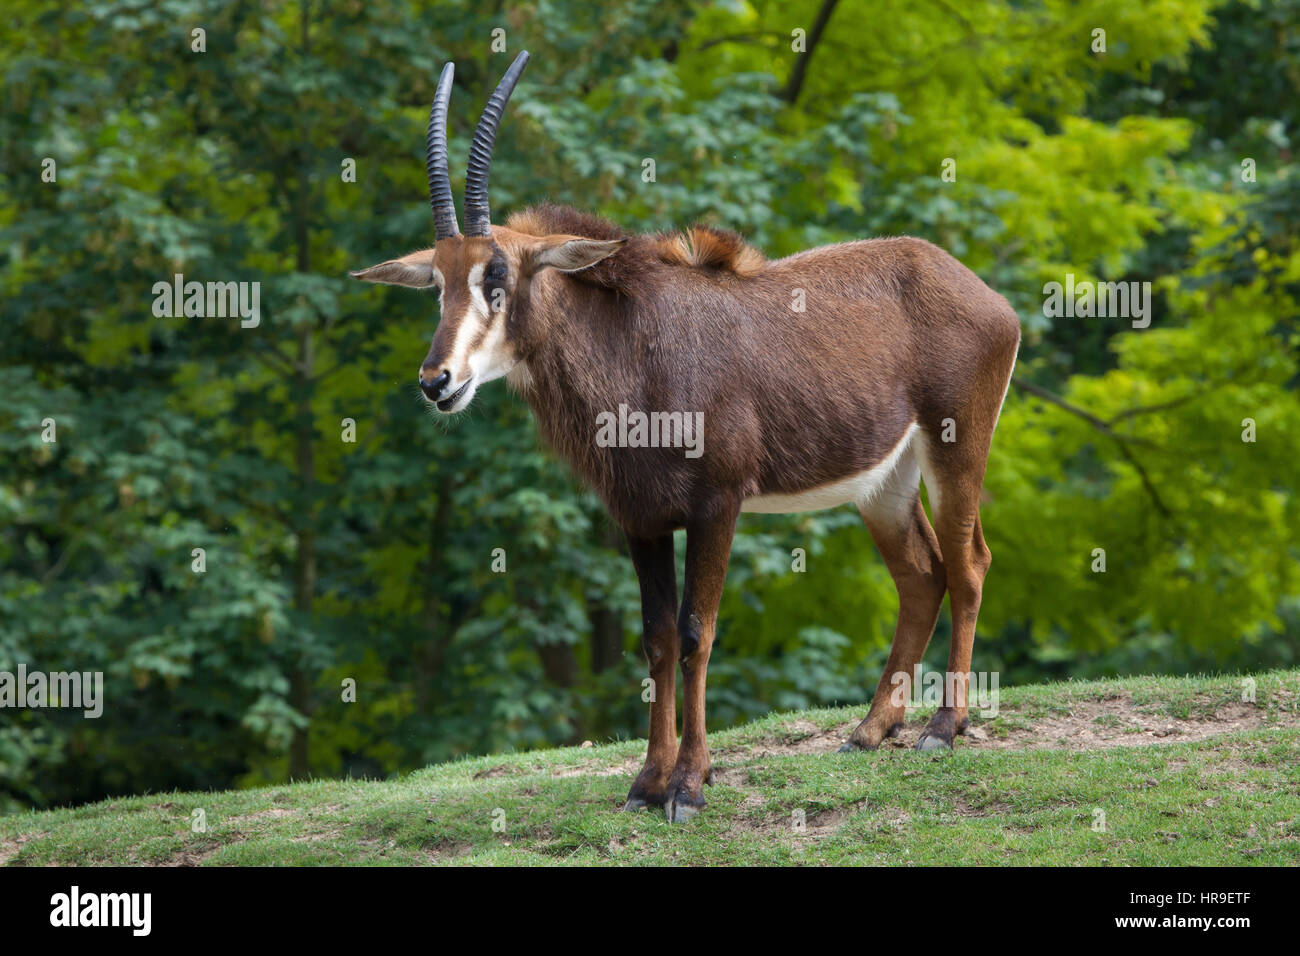 Hippotrague (Hippotragus niger), également connu sous le nom de l'antilope noire. Banque D'Images